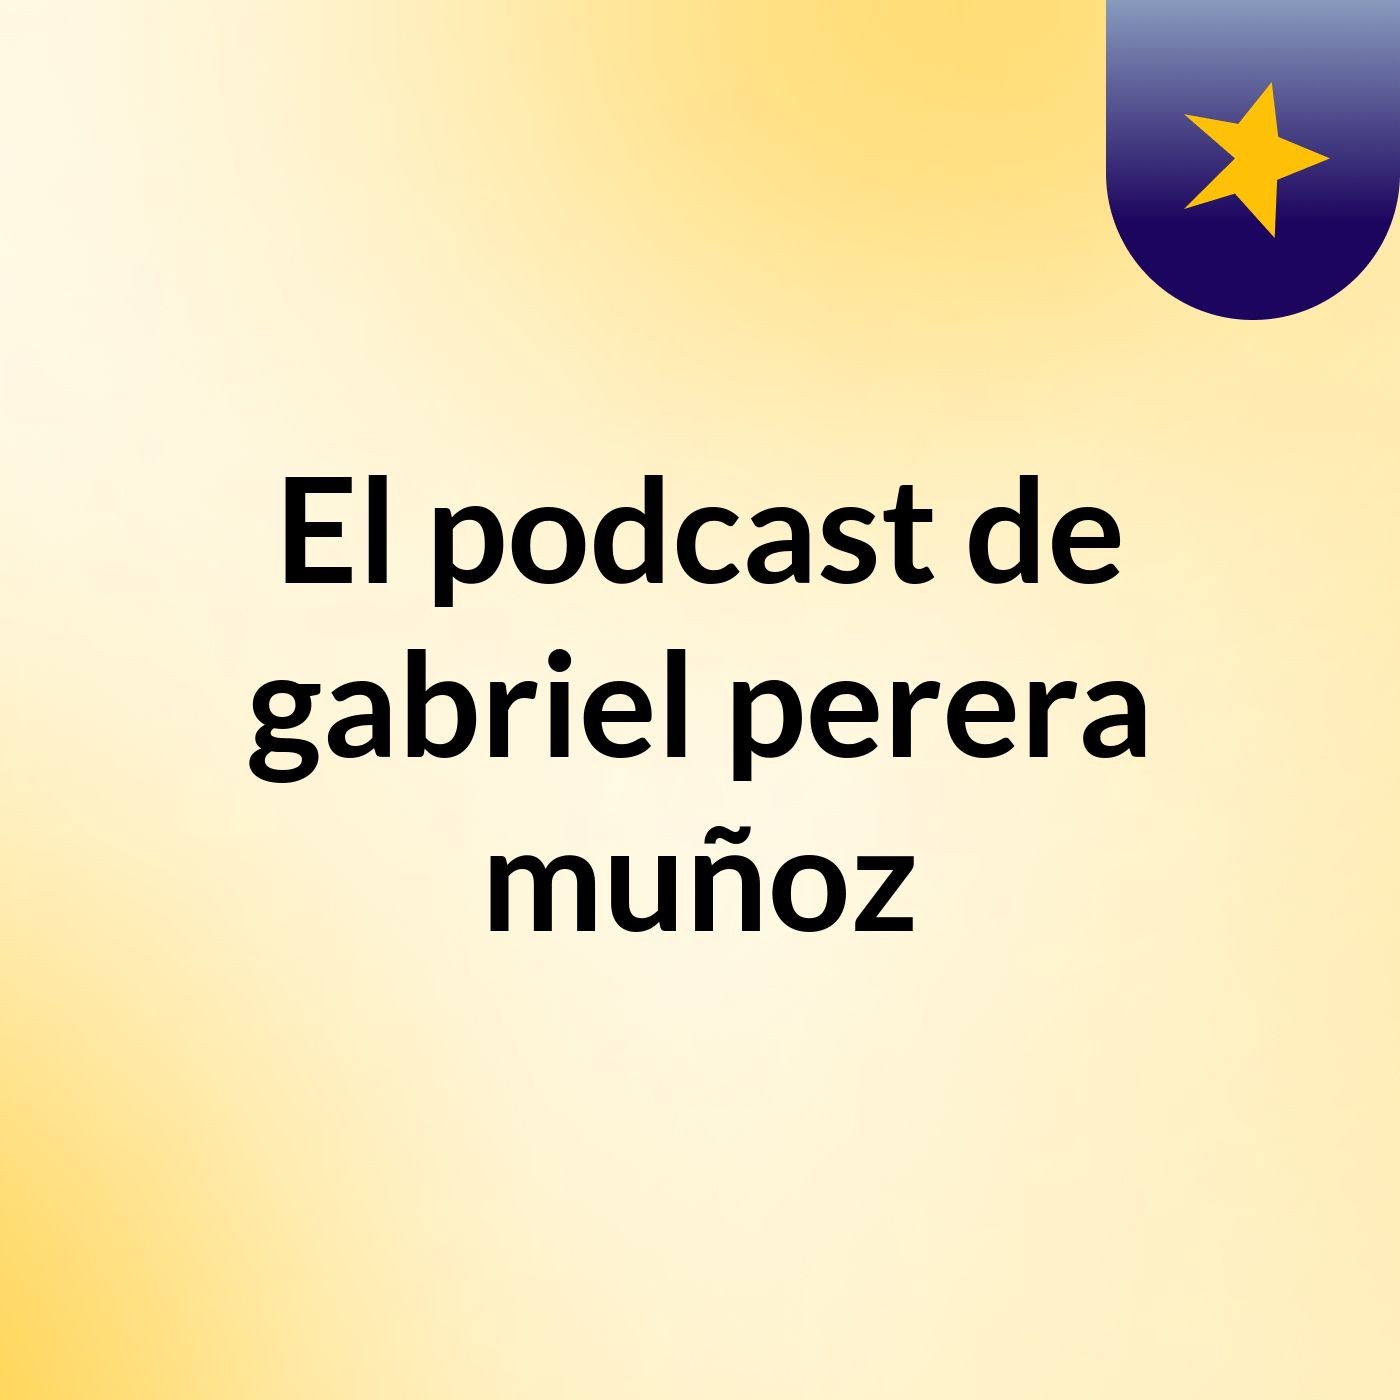 Episodio 4 - El podcast de gabriel perera muñoz